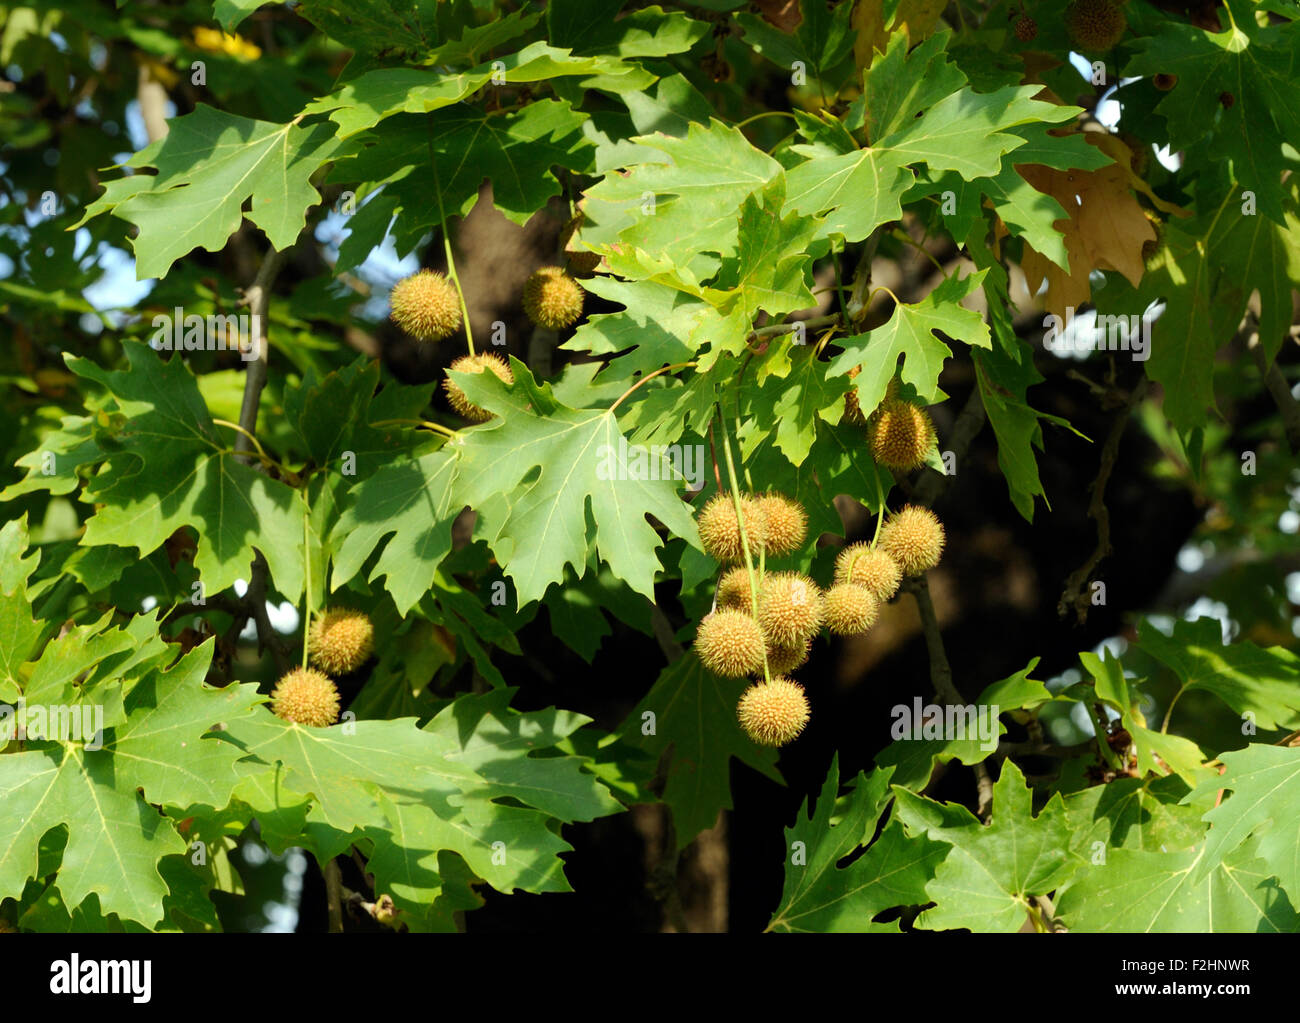 Les fruits, des akènes de balles, s'accrocher, à partir d'un avion (Platanus espèce) arbre. Pellumbas, Albanie. Banque D'Images